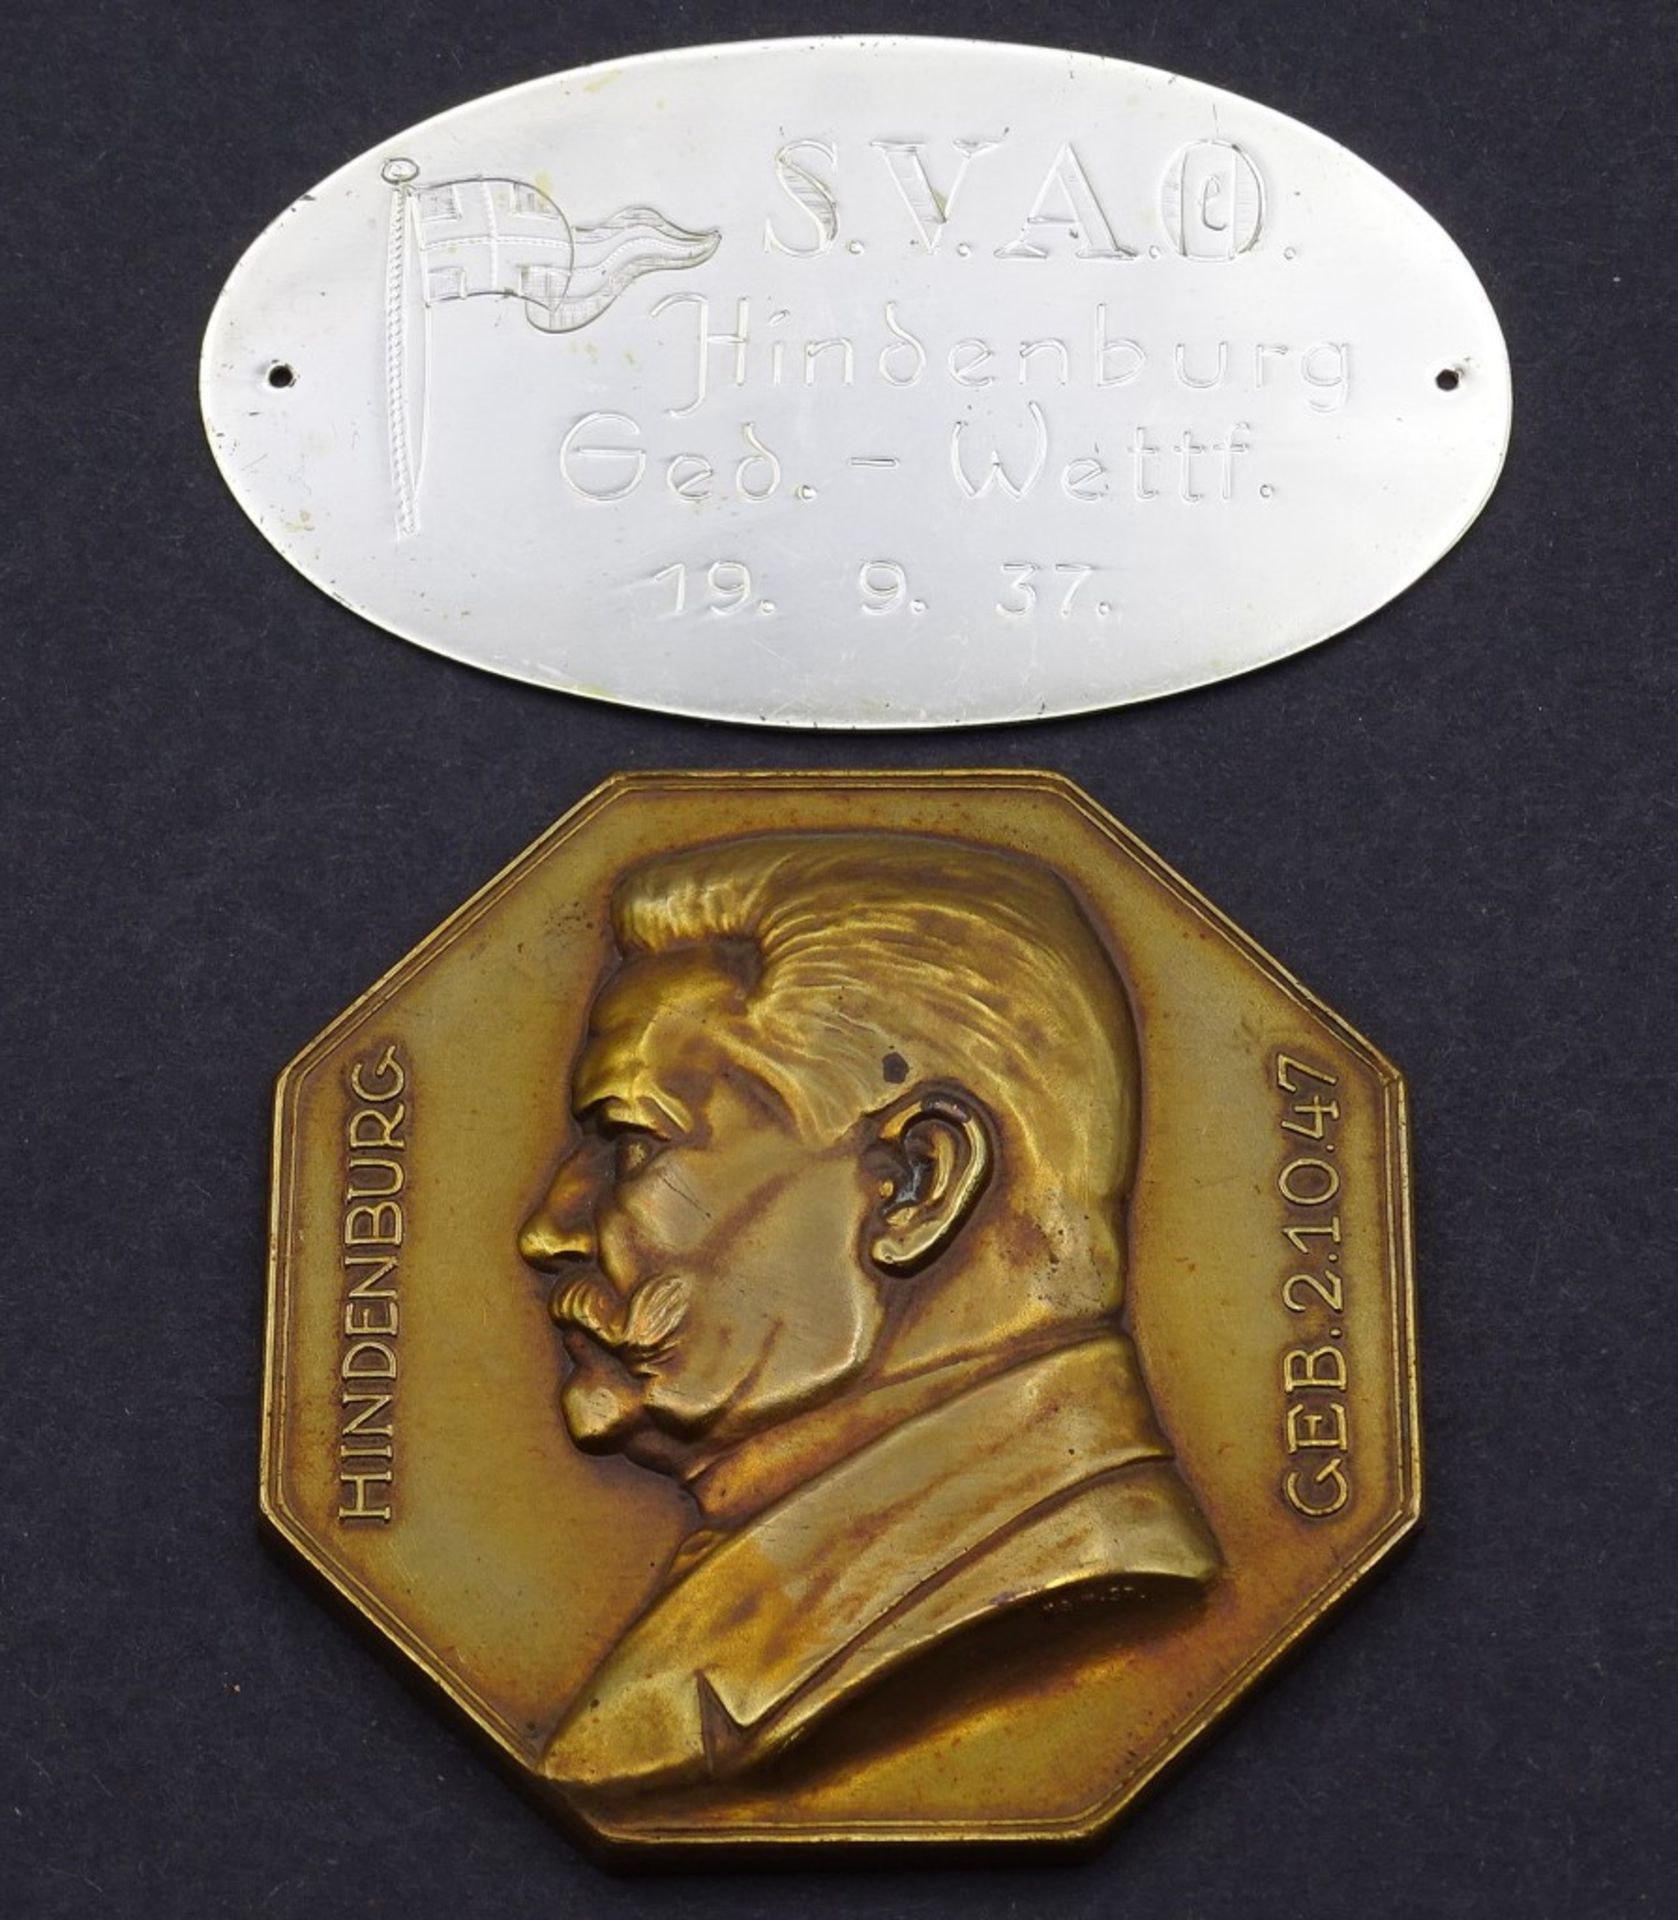 Plakette und Medaille,Hindenburg Ged.-Wettfahrt 37 / Hindenburg ´2.10.1927 (S.V.A.O - Segler